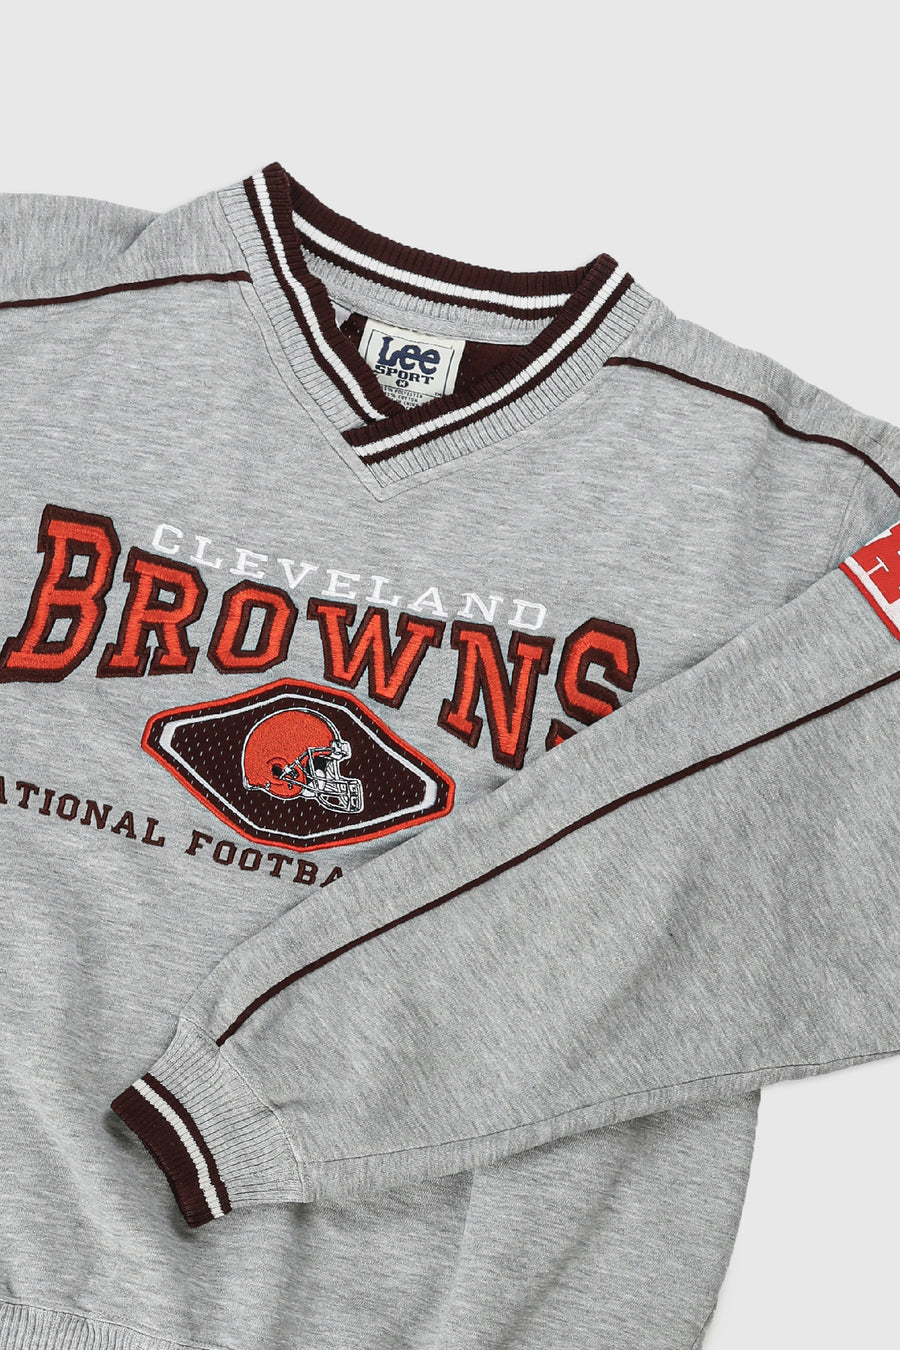 Vintage Browns NHL Sweatshirt - M